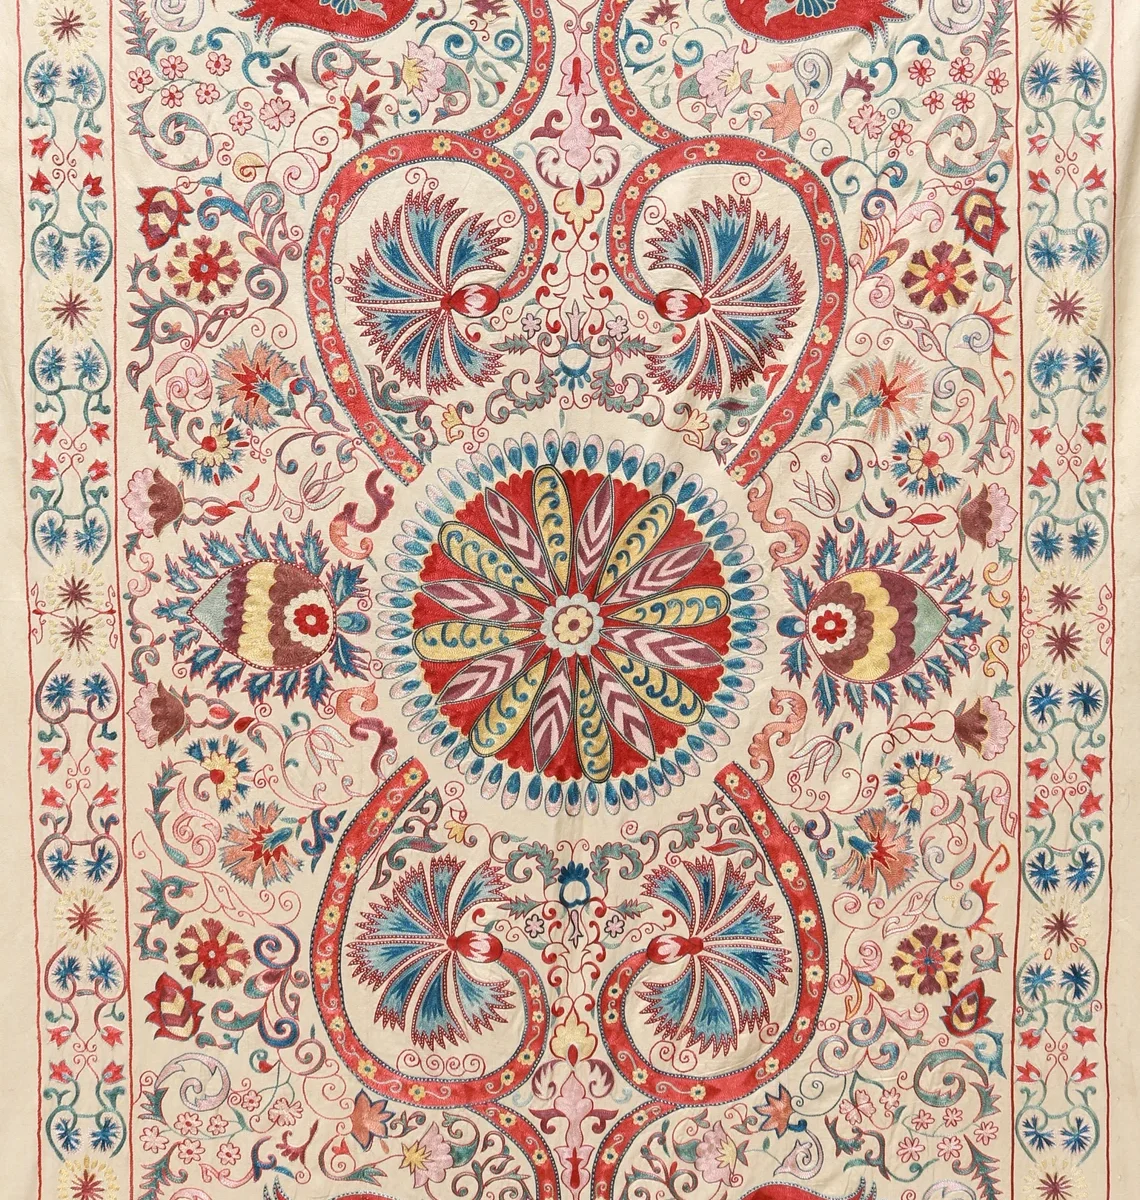 Suzani Embroidery